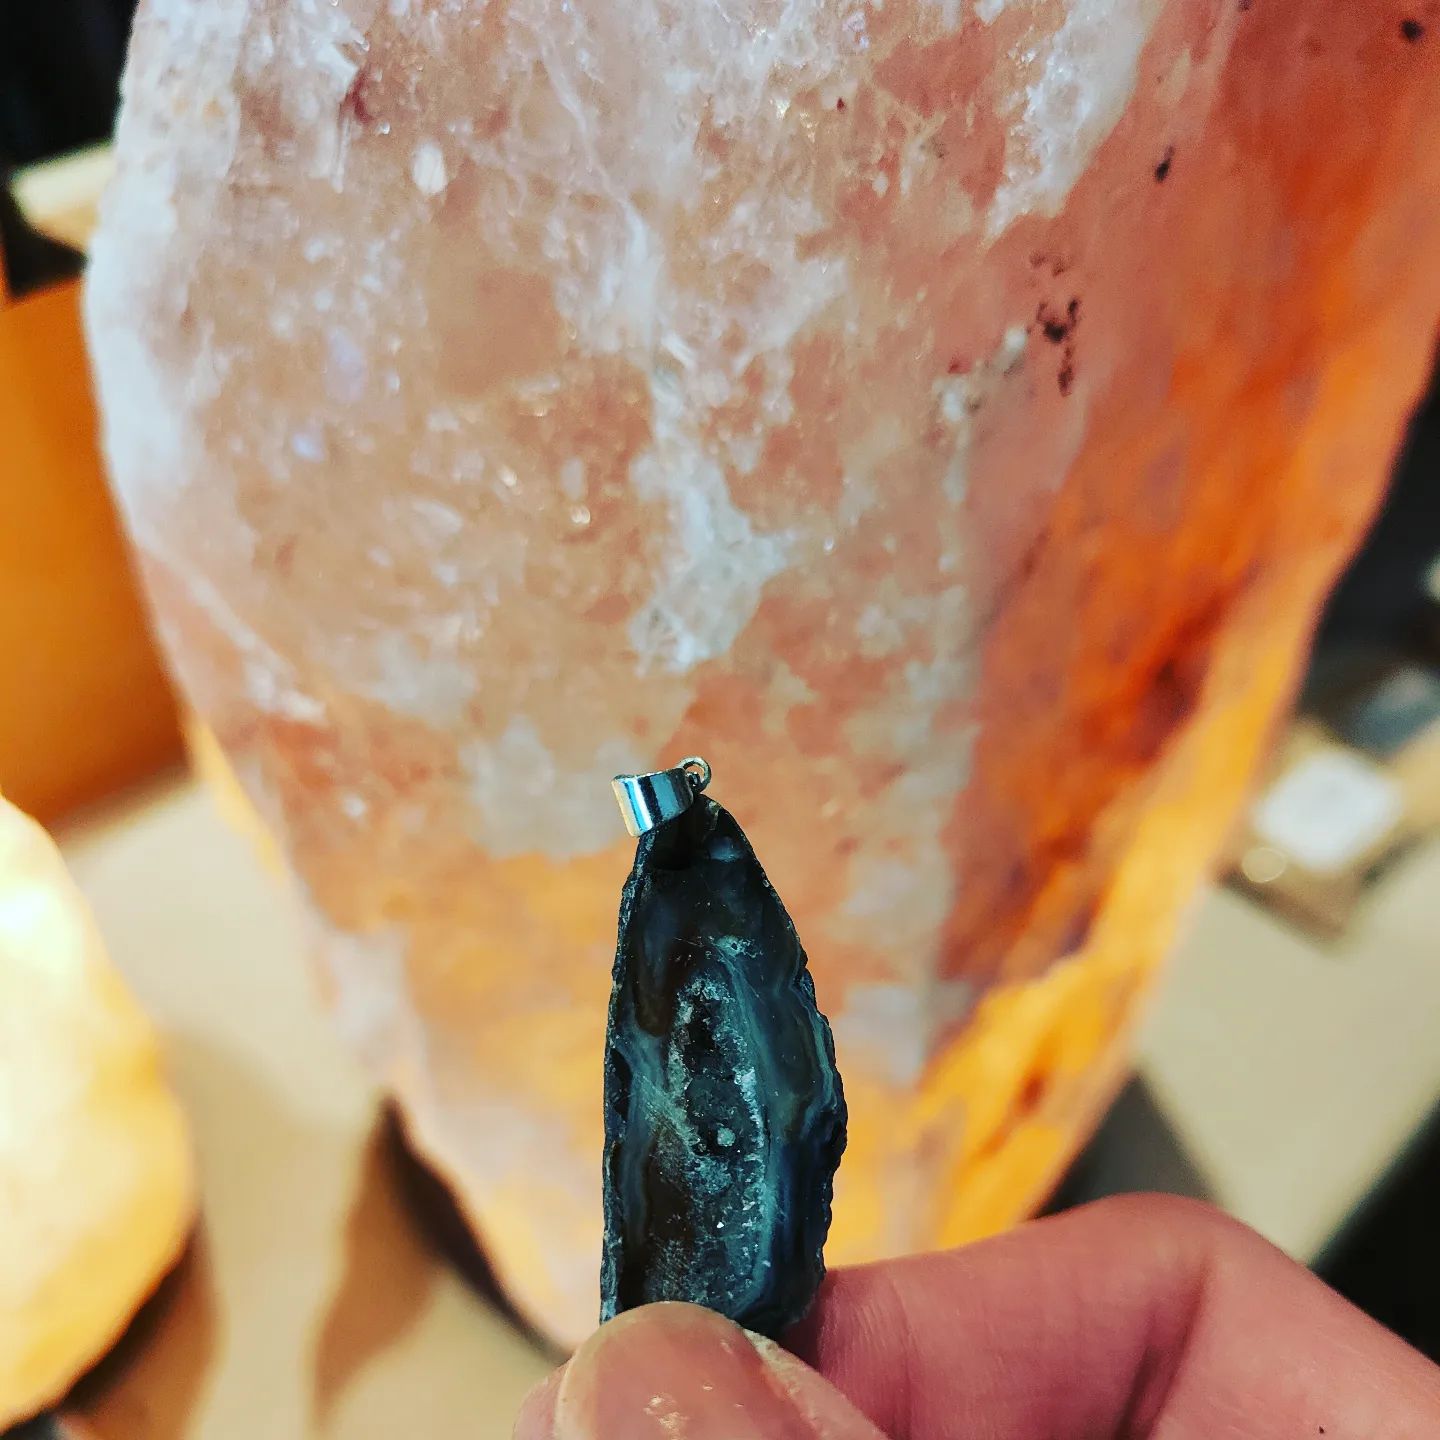 De nieuwe geode agaat hangers zijn echt zo mooi! 📿

Wist je dat aan de binnenkant van de geode stenen allemaal kristallen zitten? In 1 woord, wauw! 💎

#geode
#edelsteenhanger